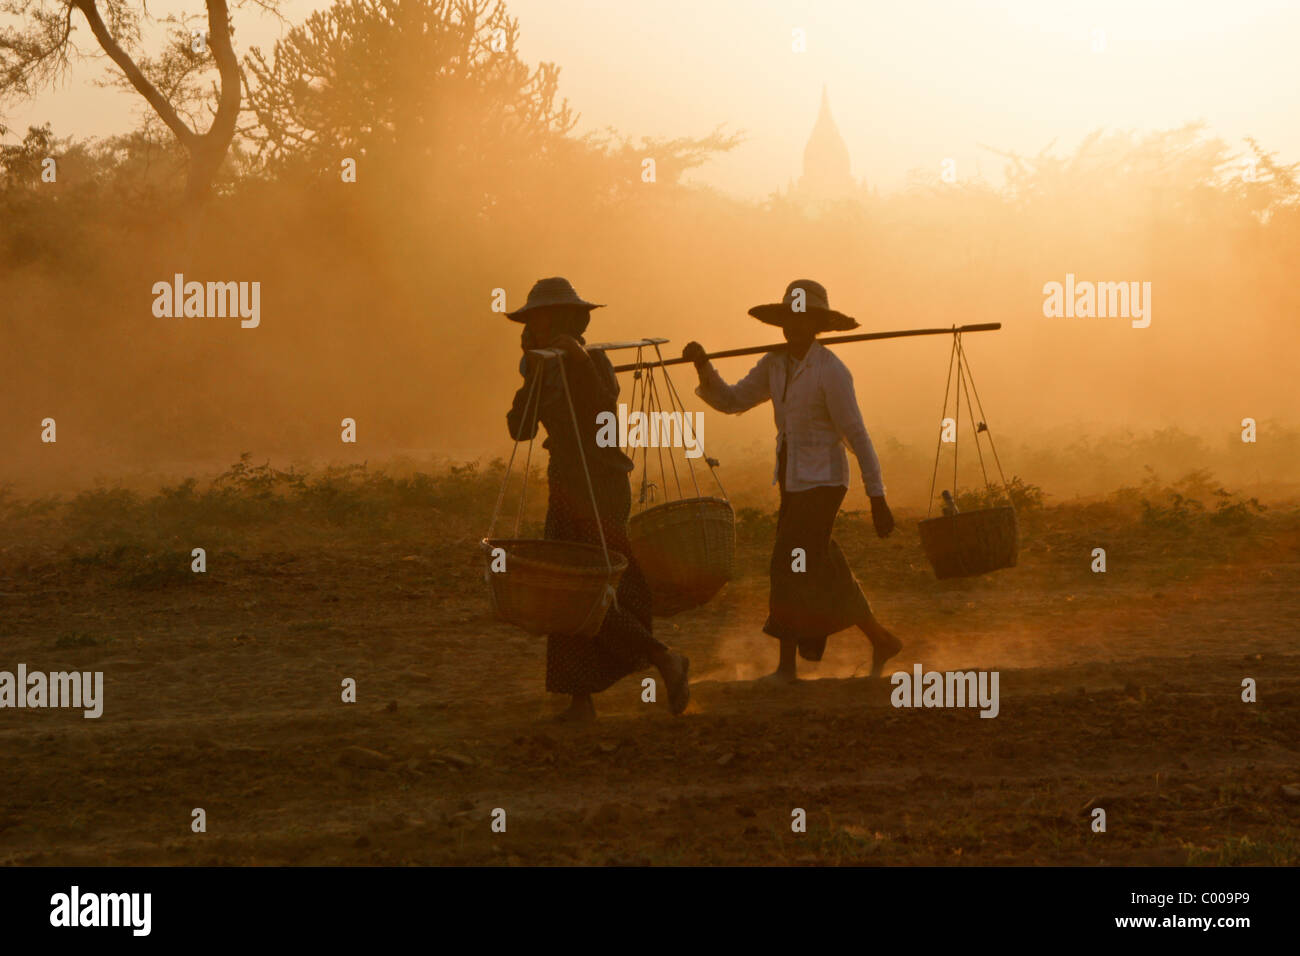 Rural women carrying baskets at sunset, Bagan (Pagan), Myanmar (Burma) Stock Photo